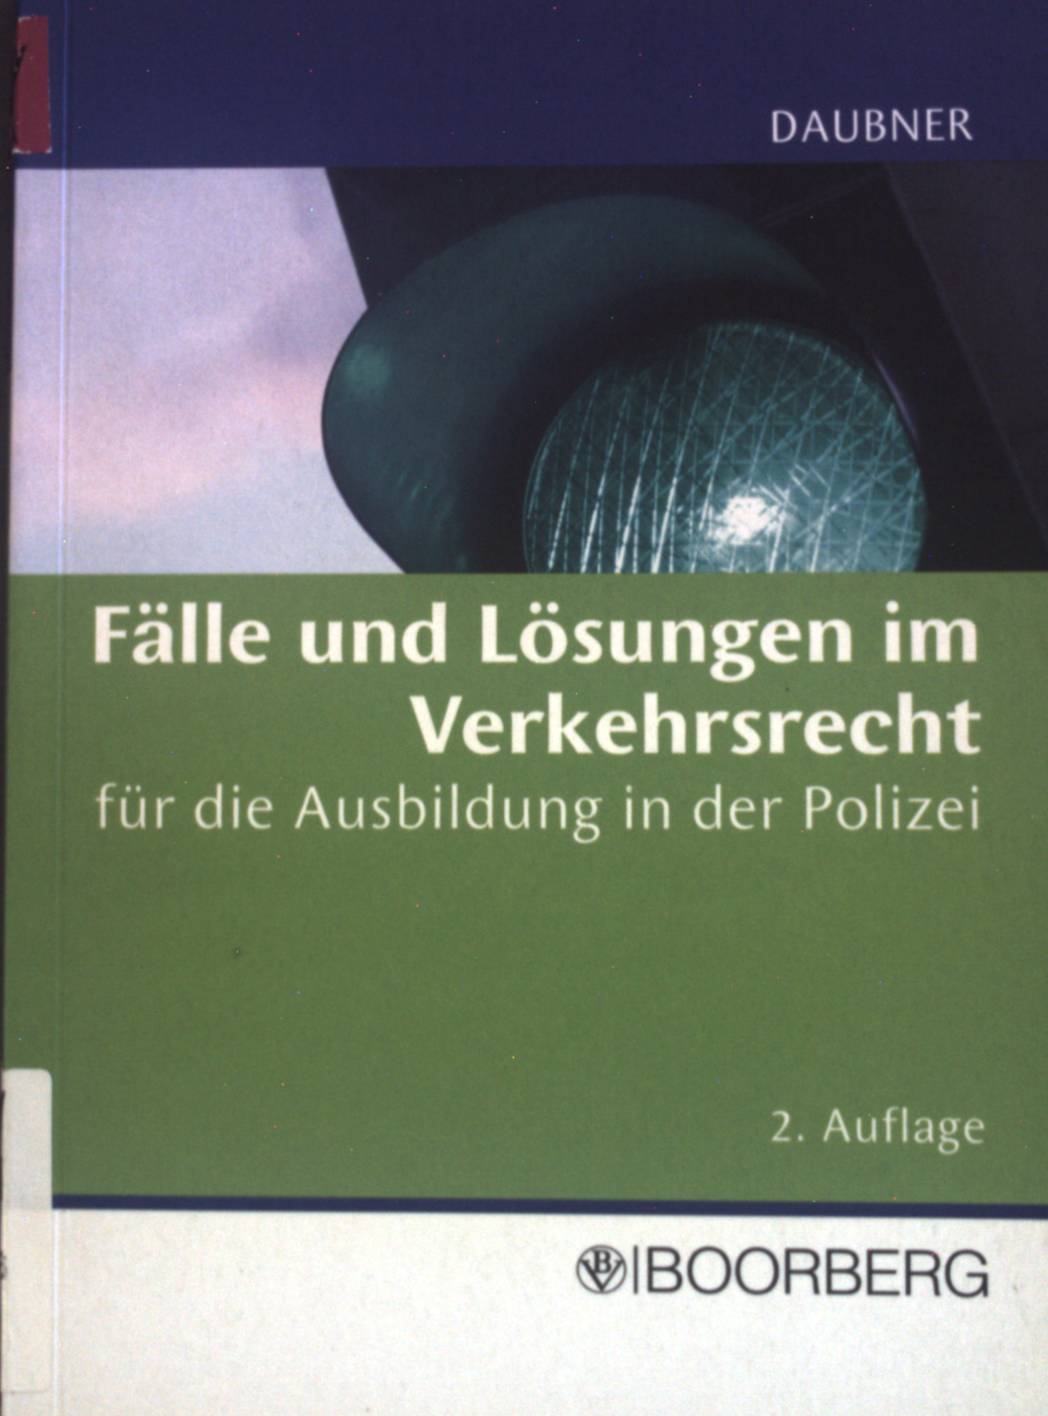 Fälle und Lösungen im Verkehrsrecht für die Ausbildung in der Polizei.  2., vollst. überarb. Aufl. - Daubner, Robert